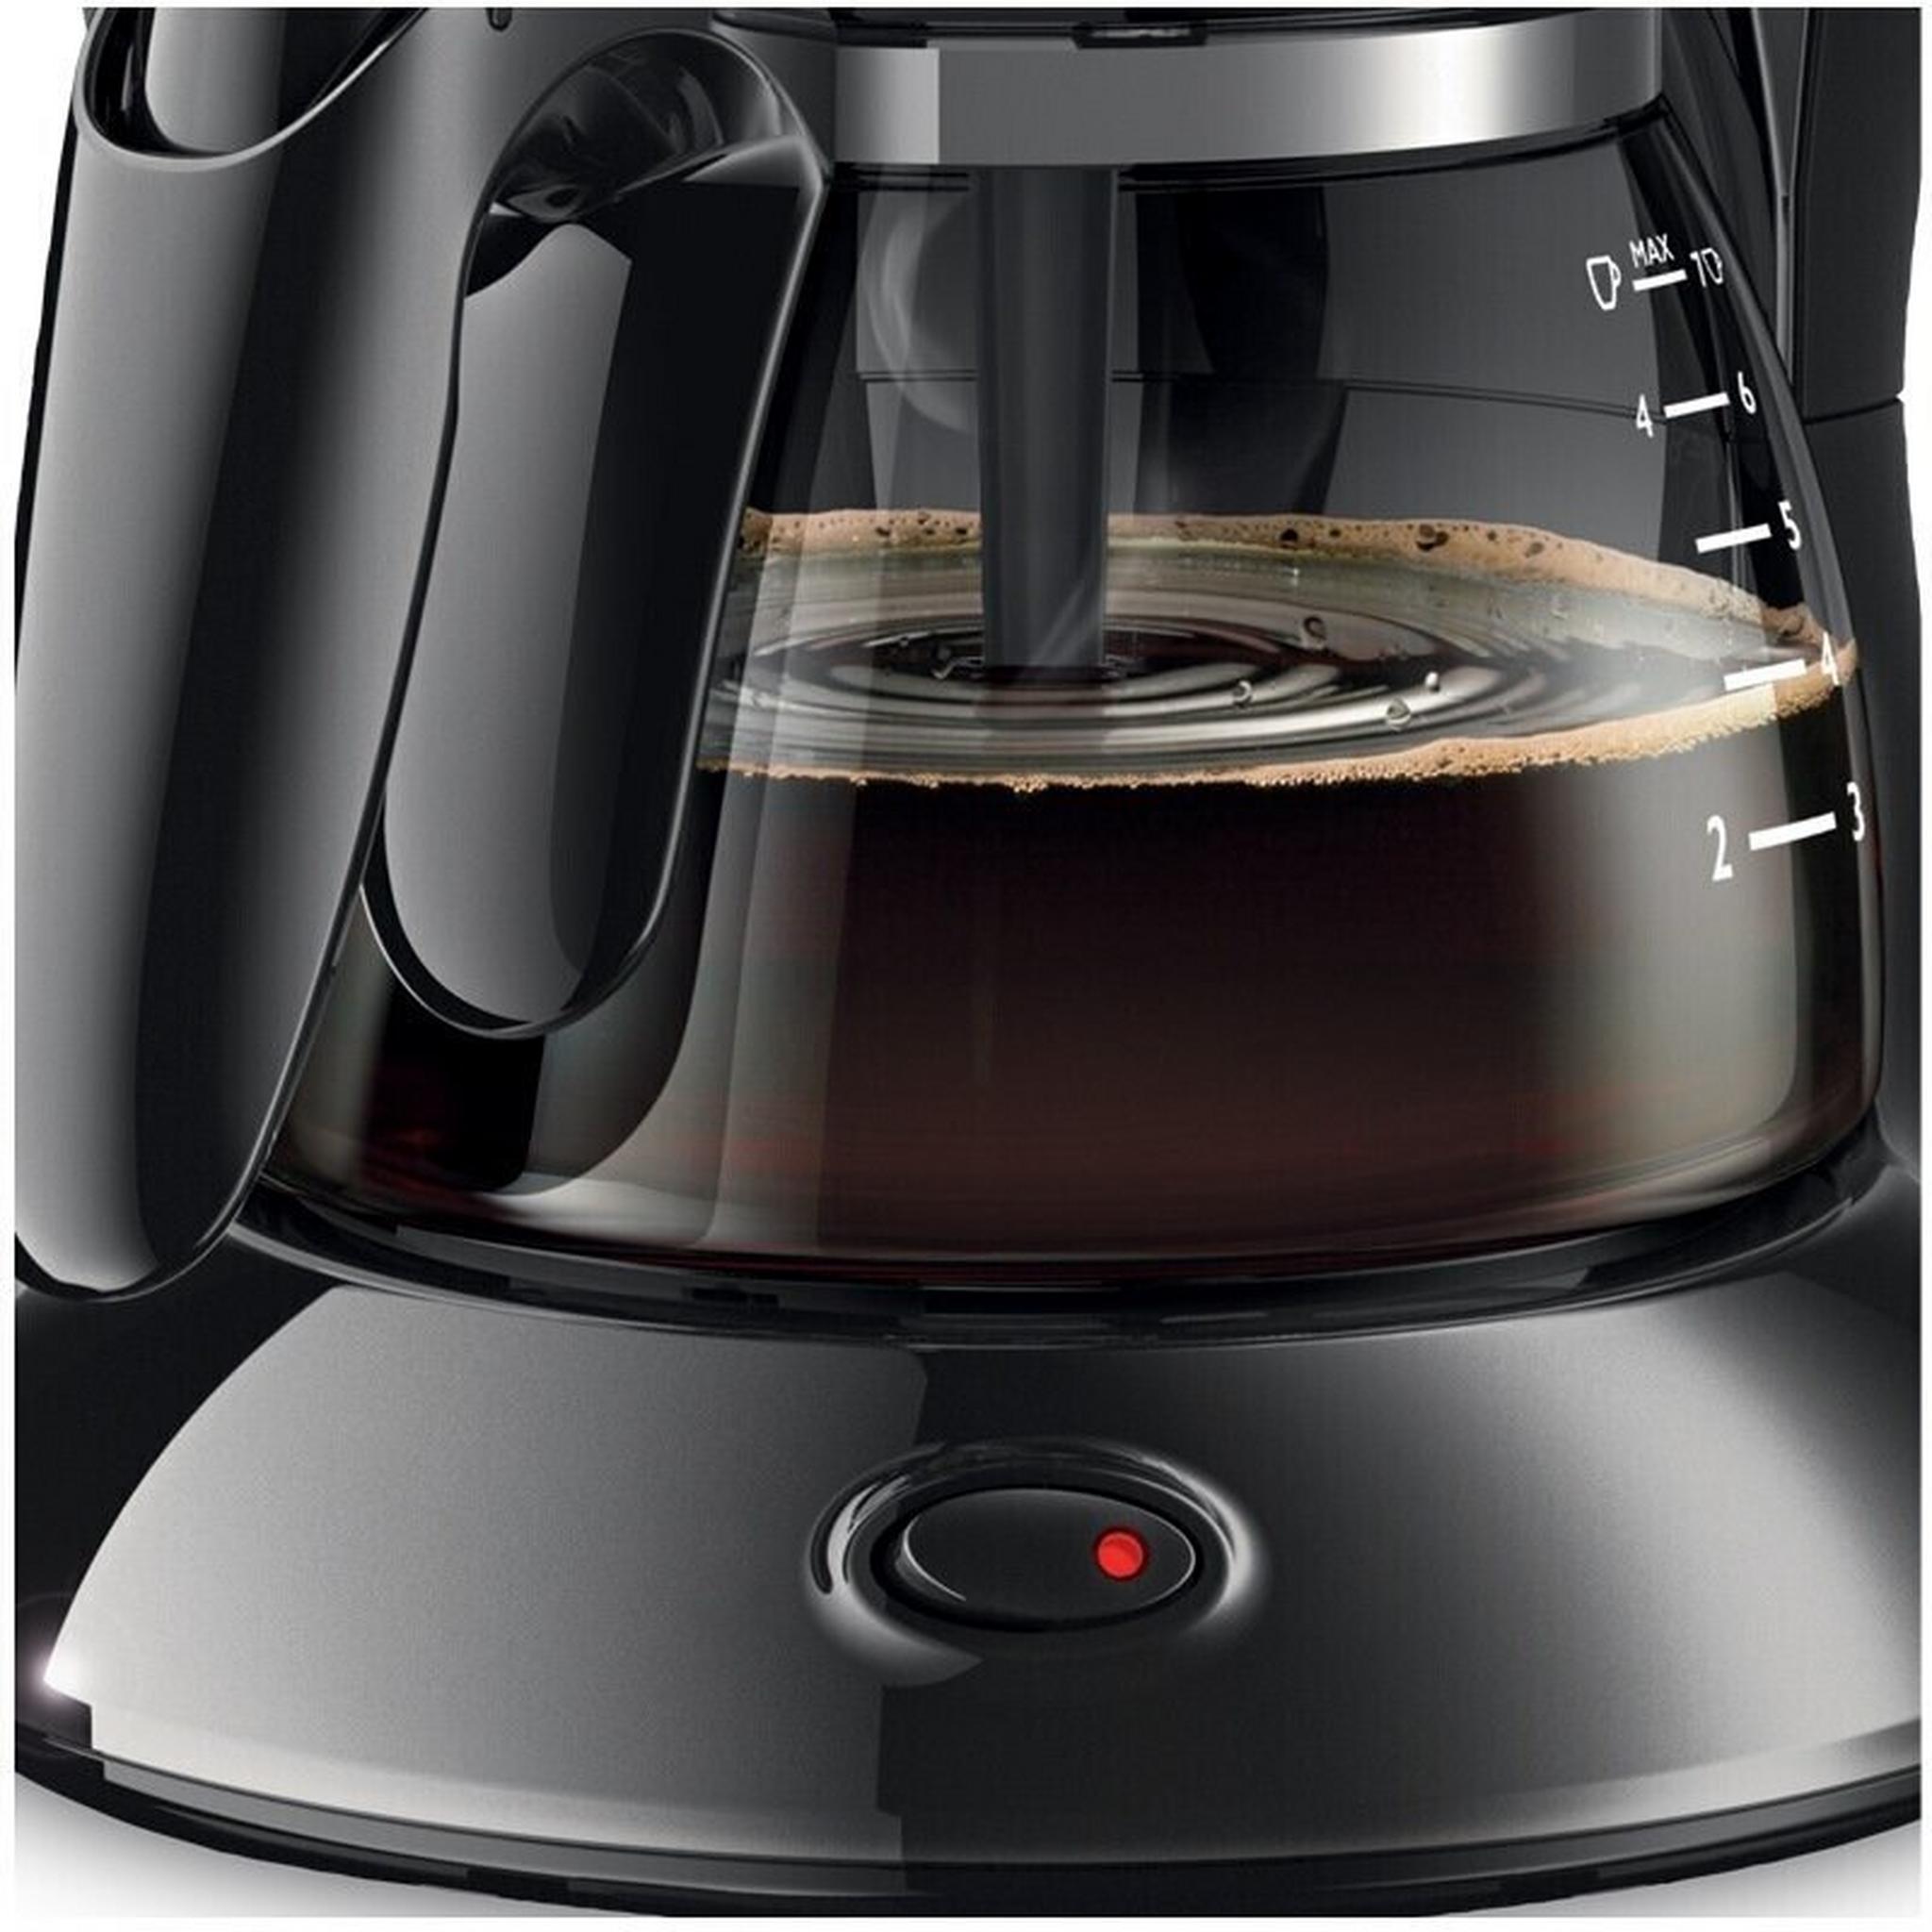 Philips Drip Coffee Maker, 750W, 0.6L, HD7432/20 – Black